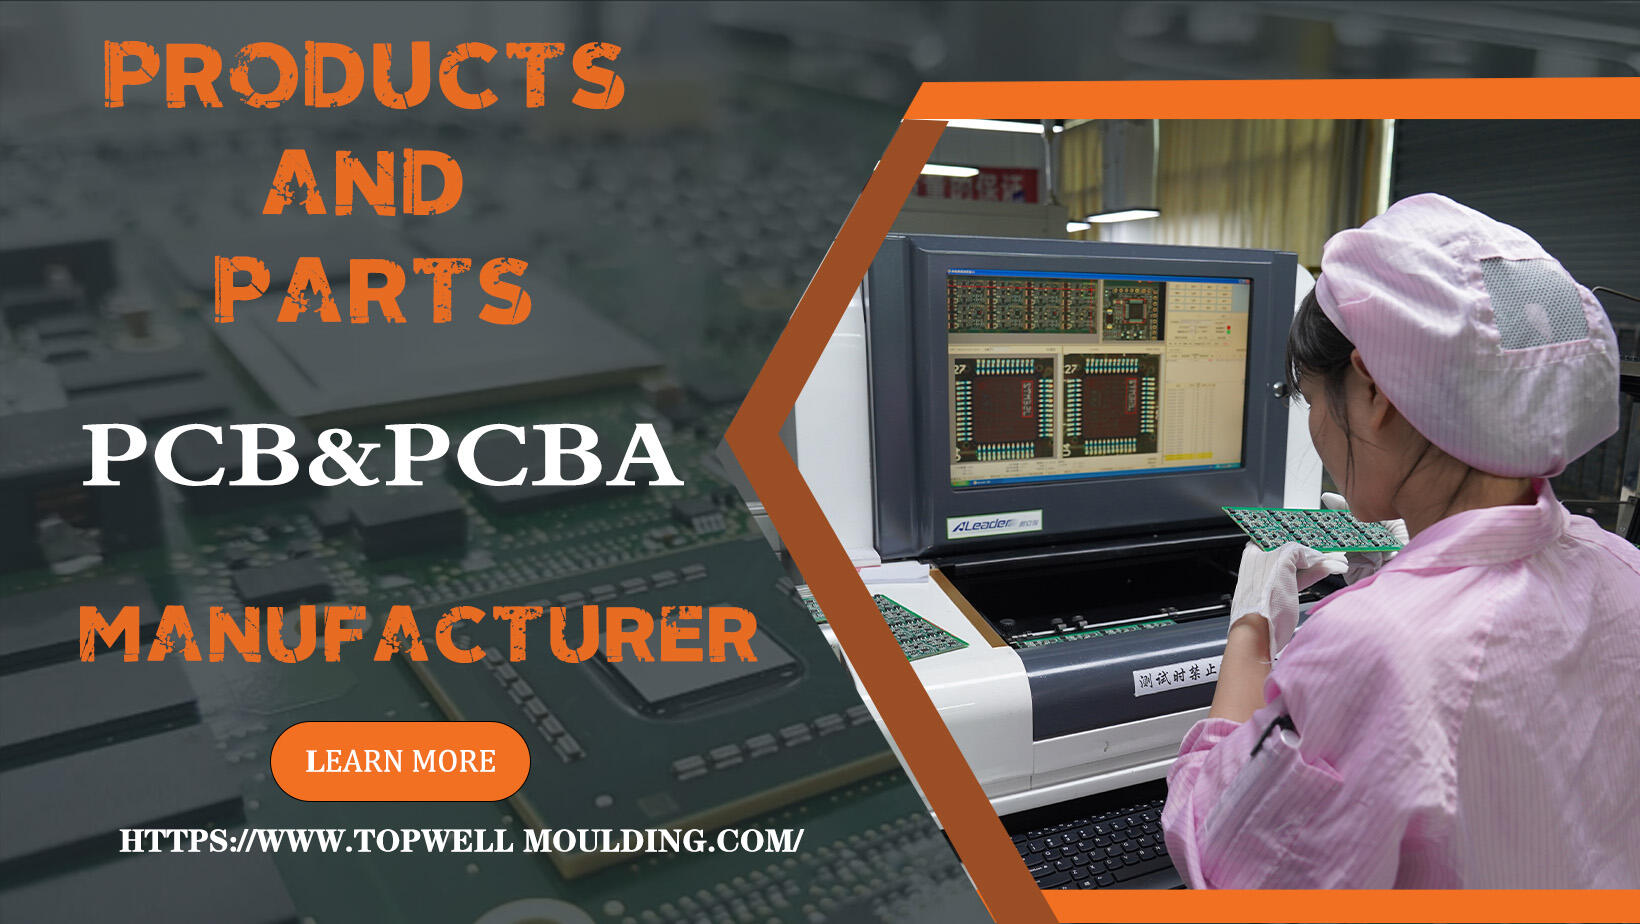 PCBA; PCB; diseño de PCB (placa de circuito impreso), PCBA (ensamblaje de PCB) y OEM